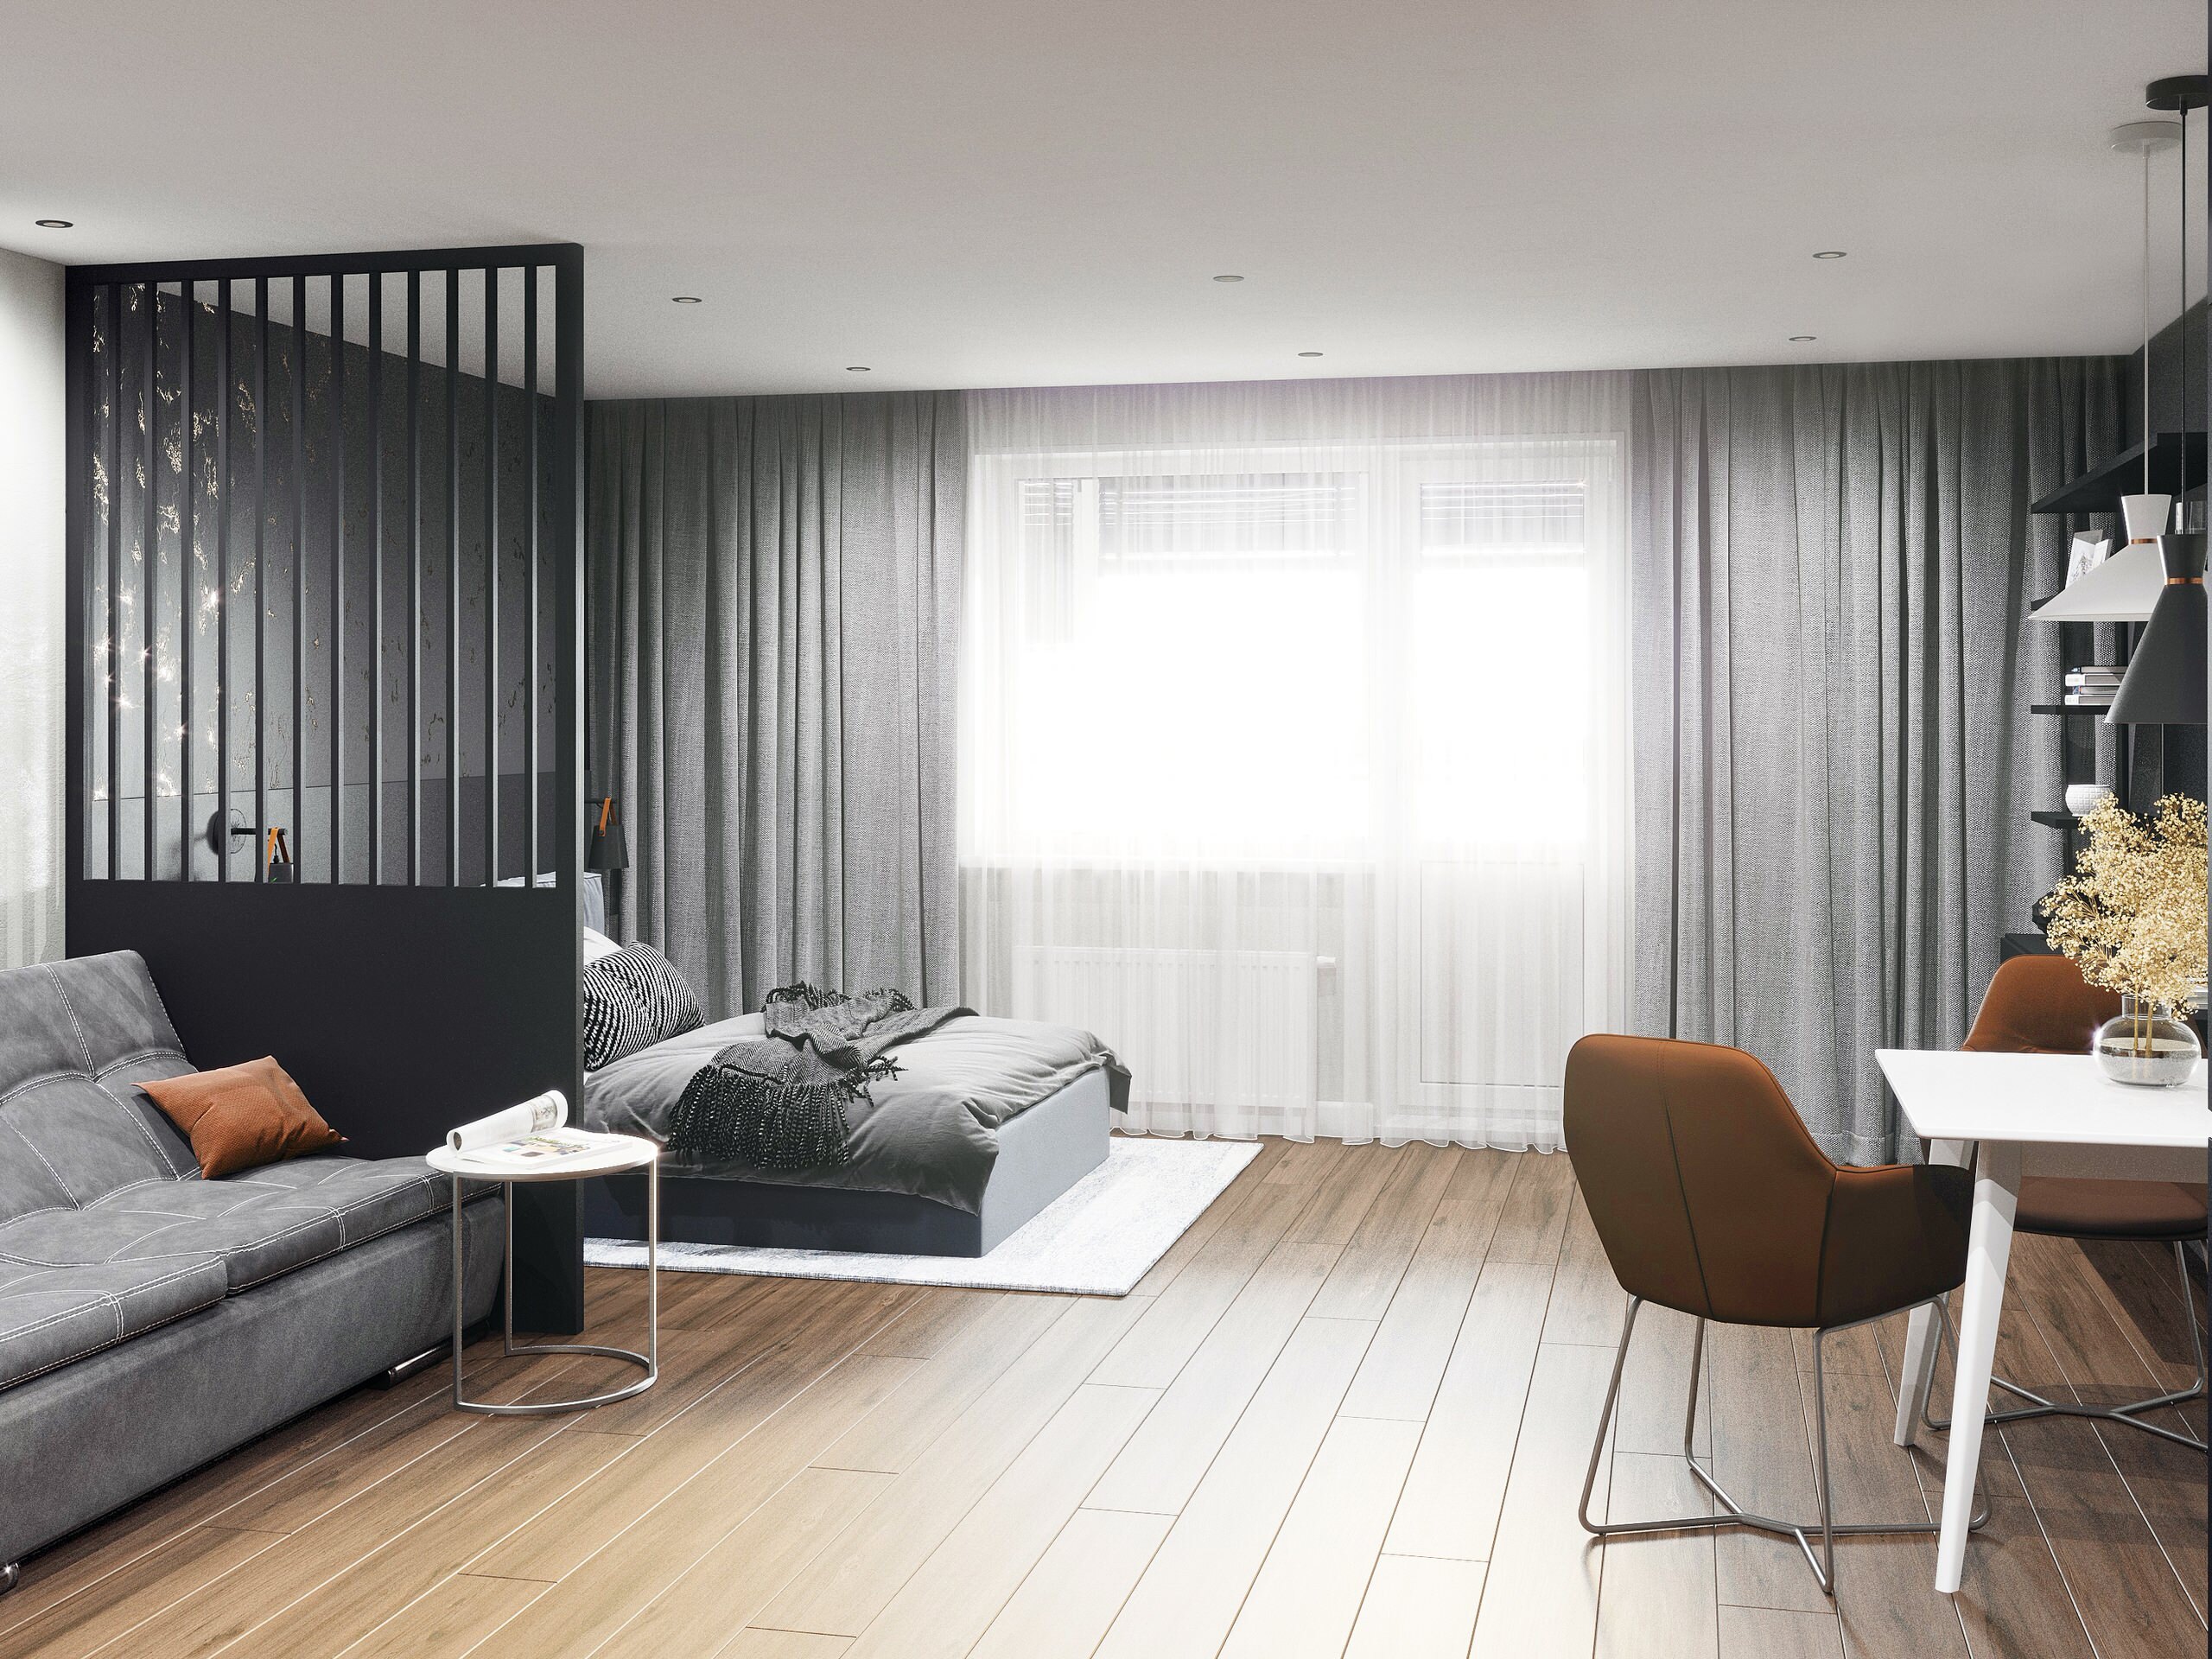 Интерьер гостиной cветовыми линиями и вертикальными жалюзи в современном стиле